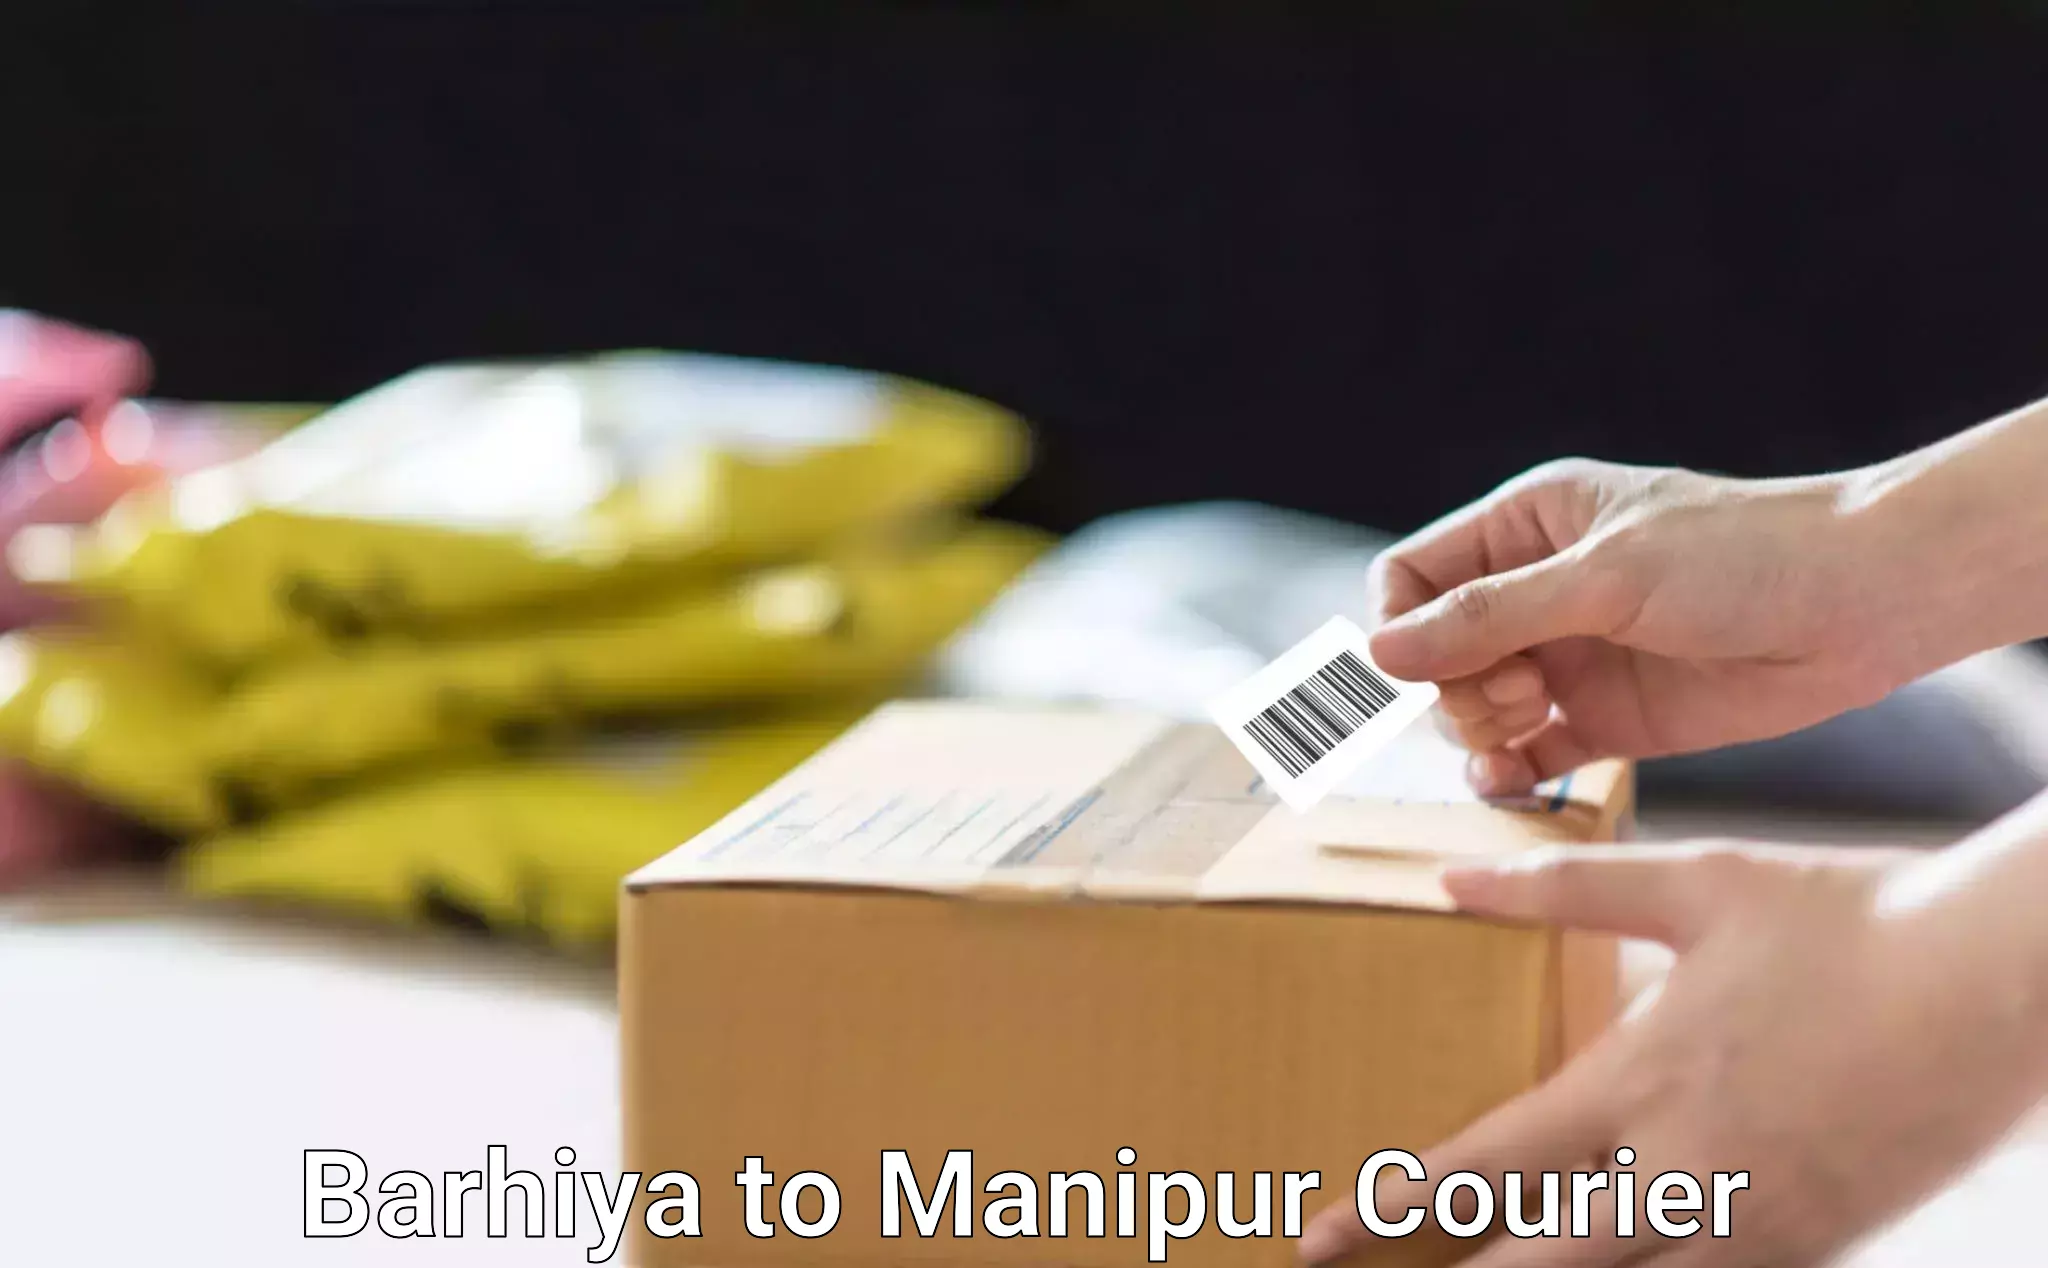 Furniture moving services Barhiya to Manipur